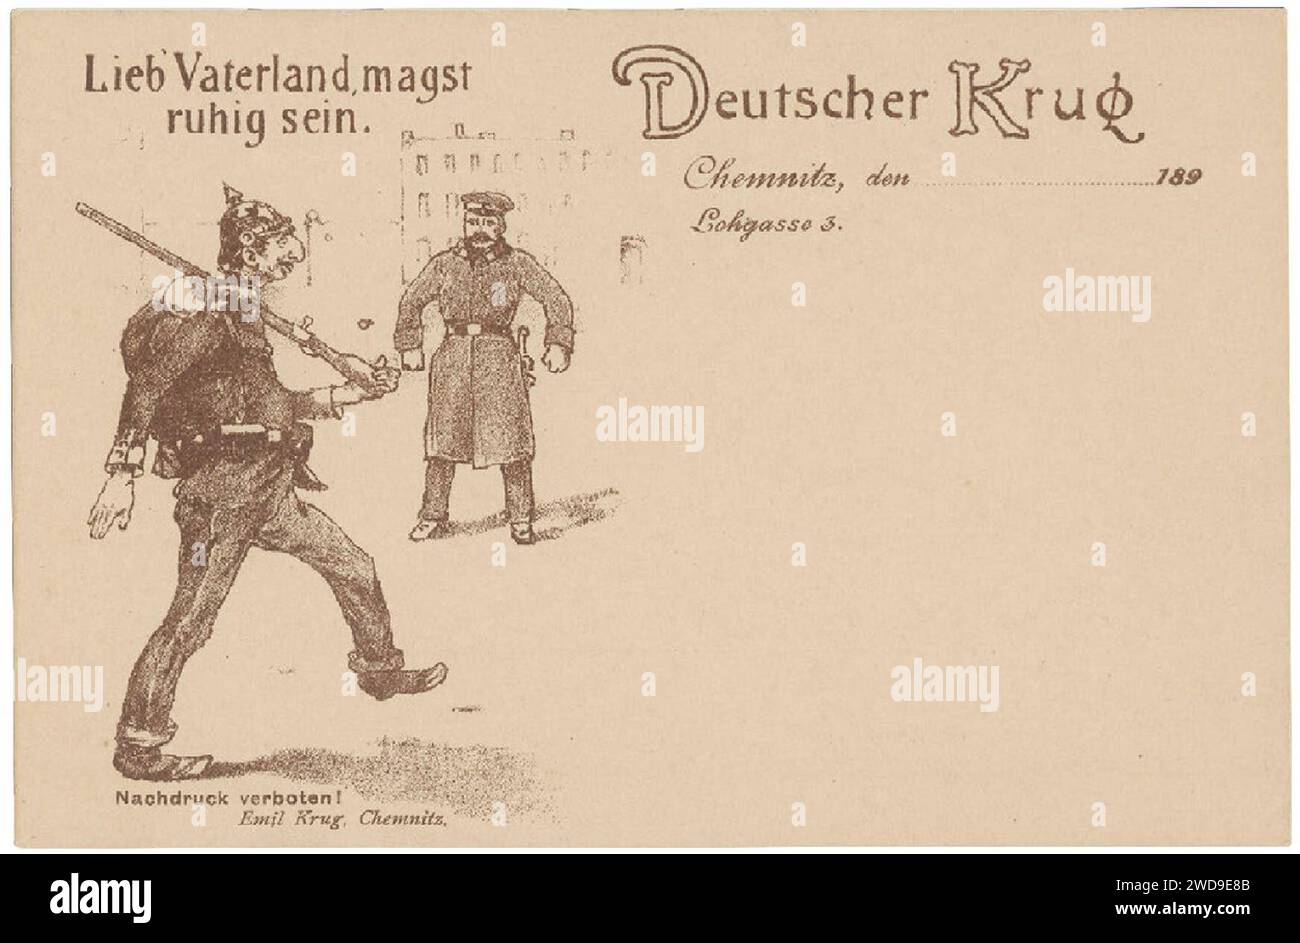 1890er Jahre Antisemitismus Postkarte Deutscher Krug Chemnitz Lohgasse 3, Lieb' Vaterland, magst ruhig sein, Bildseite. Stock Photo